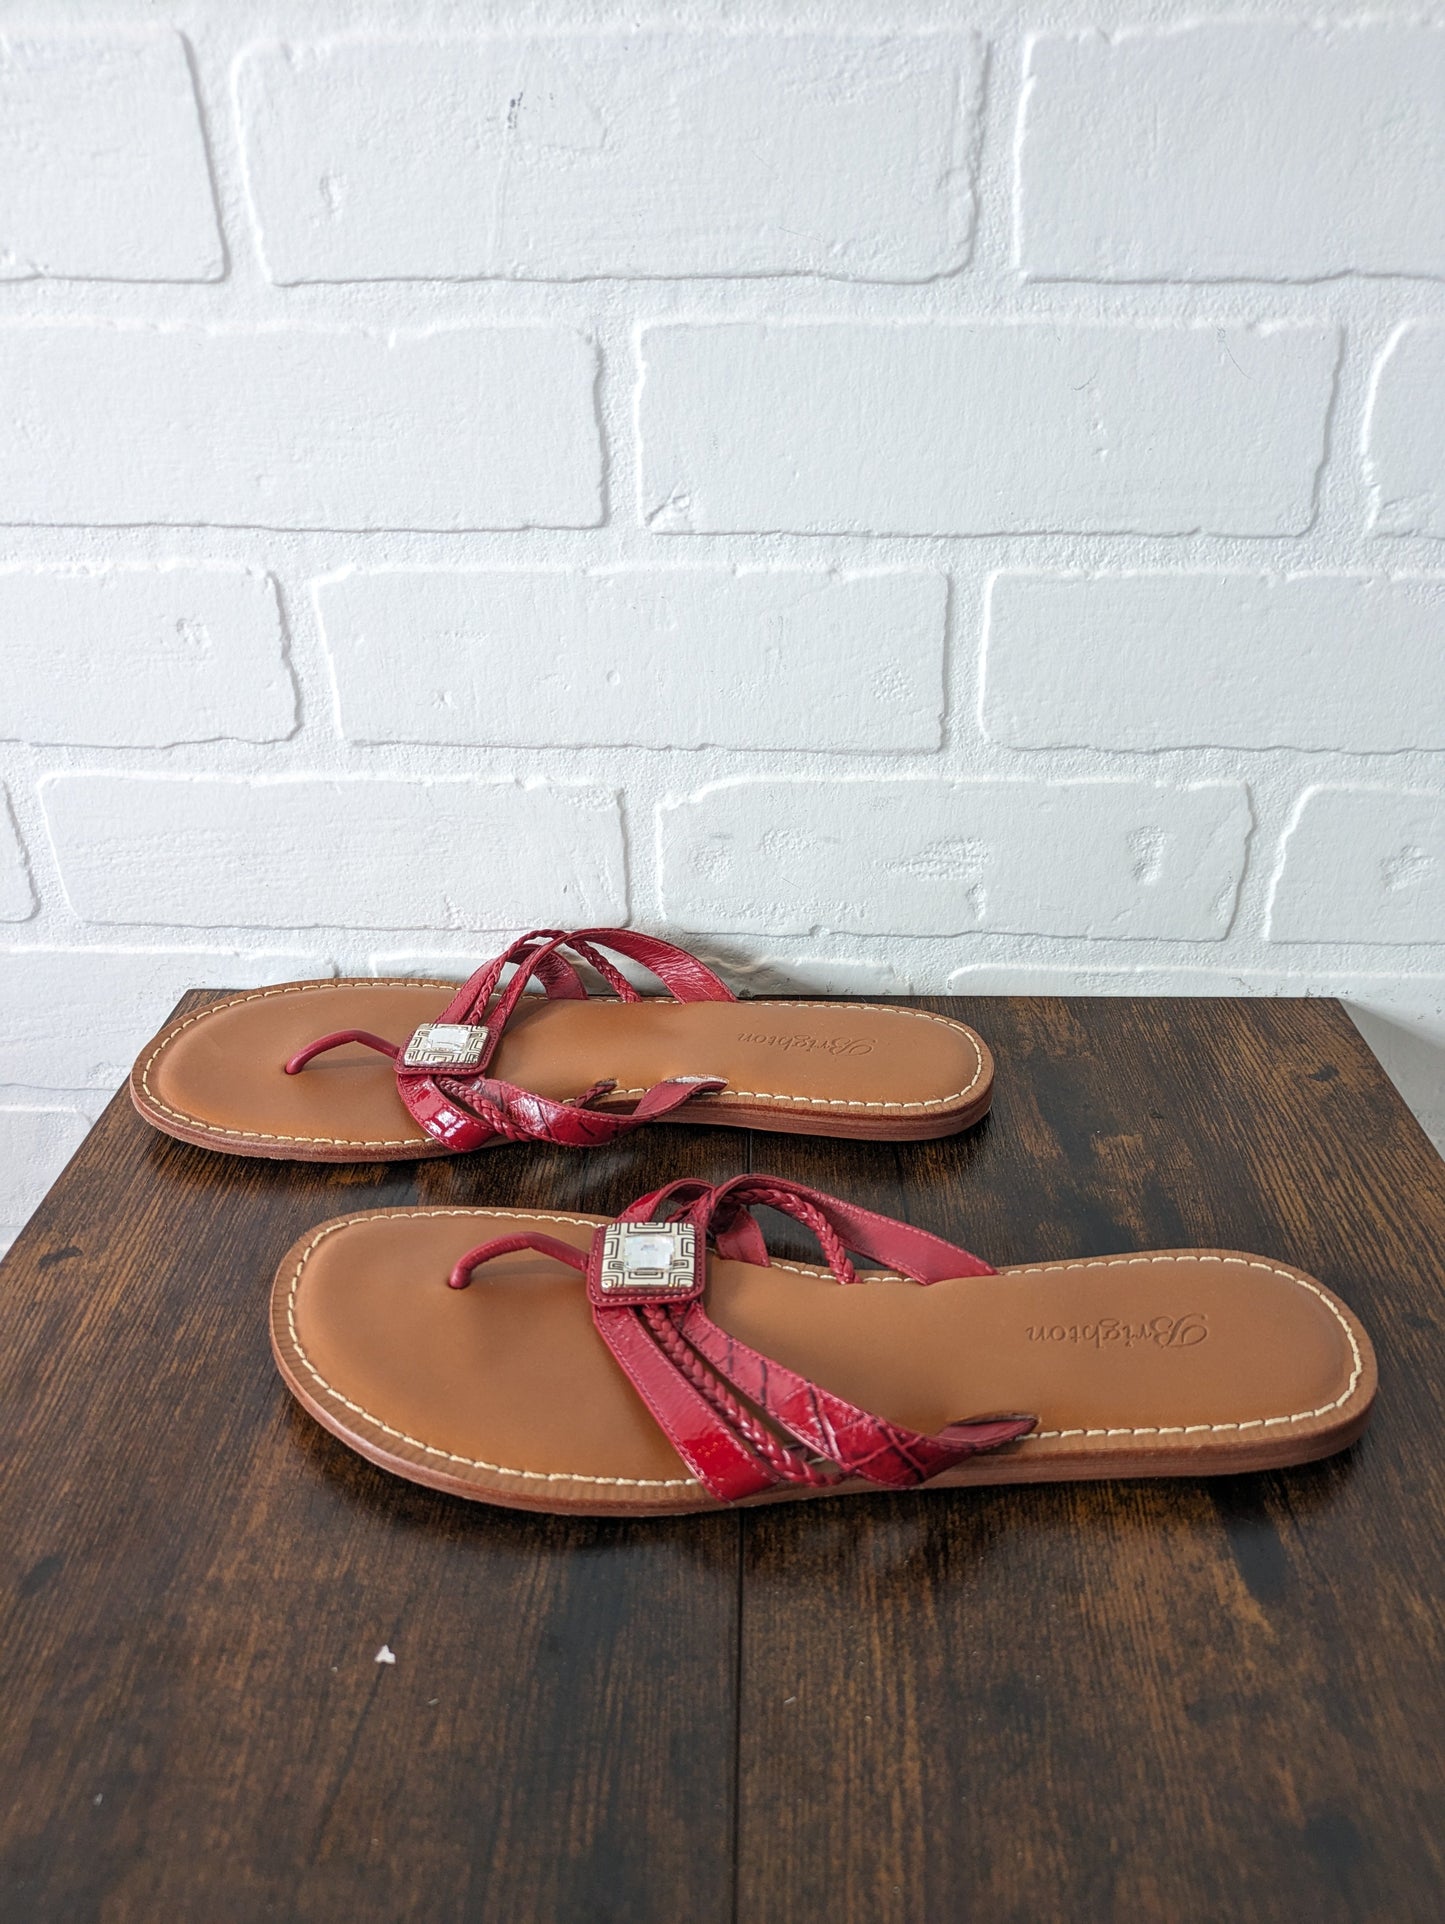 Sandals Flip Flops By Brighton  Size: 8.5